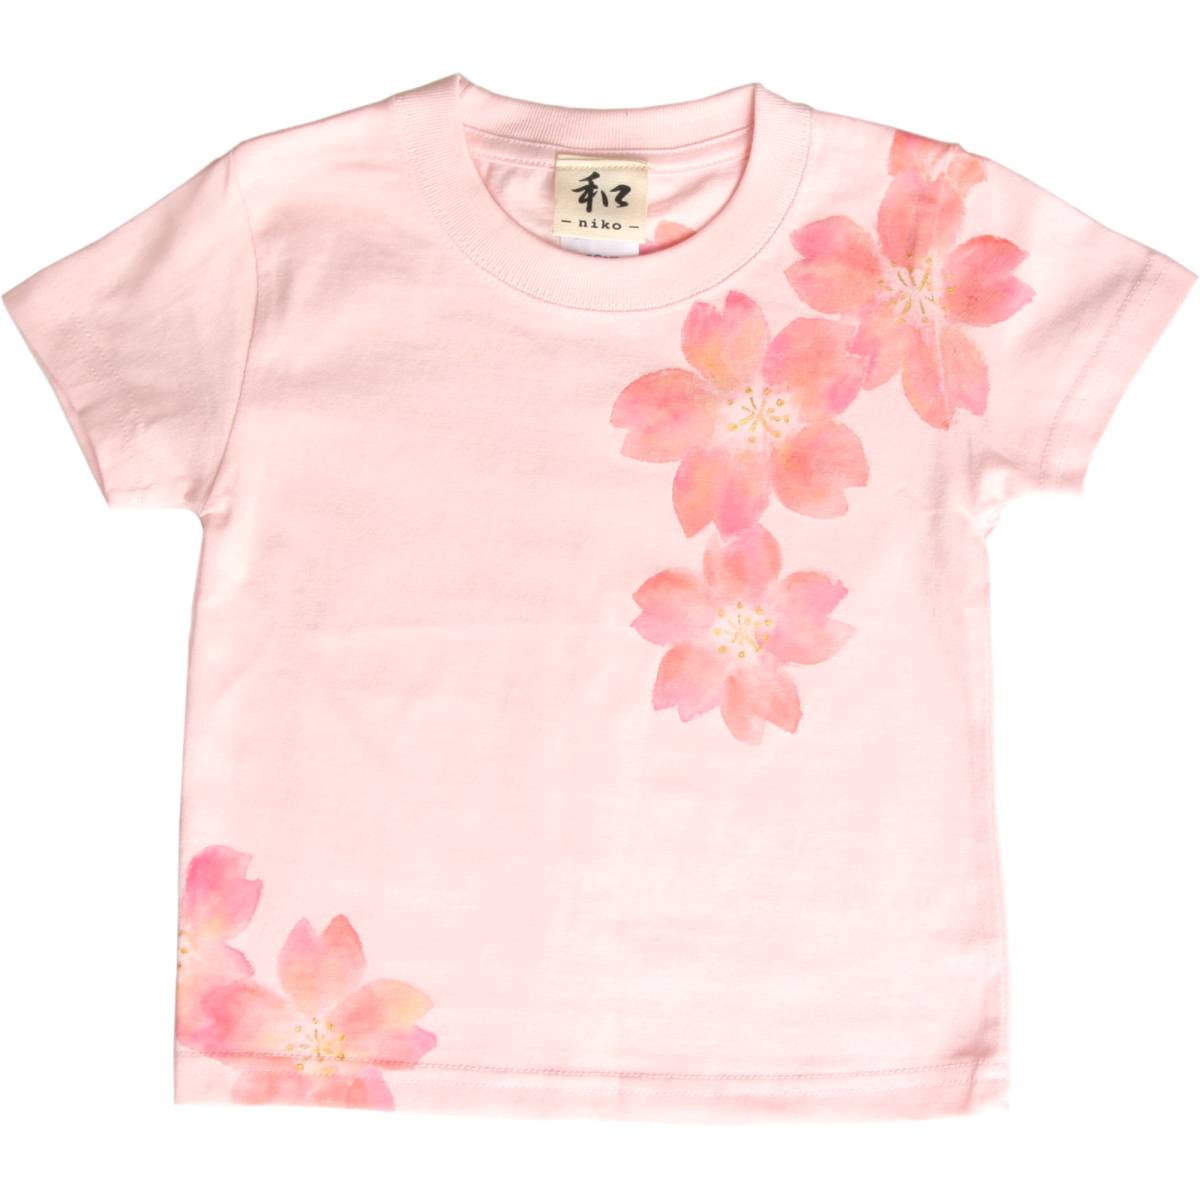 Vêtements pour enfants T-shirt pour enfants Taille 100 T-shirt à motif de fleurs de cerisier rose T-shirt peint à la main Motif japonais Printemps, hauts, t-shirt à manches courtes, 100(95~104cm)